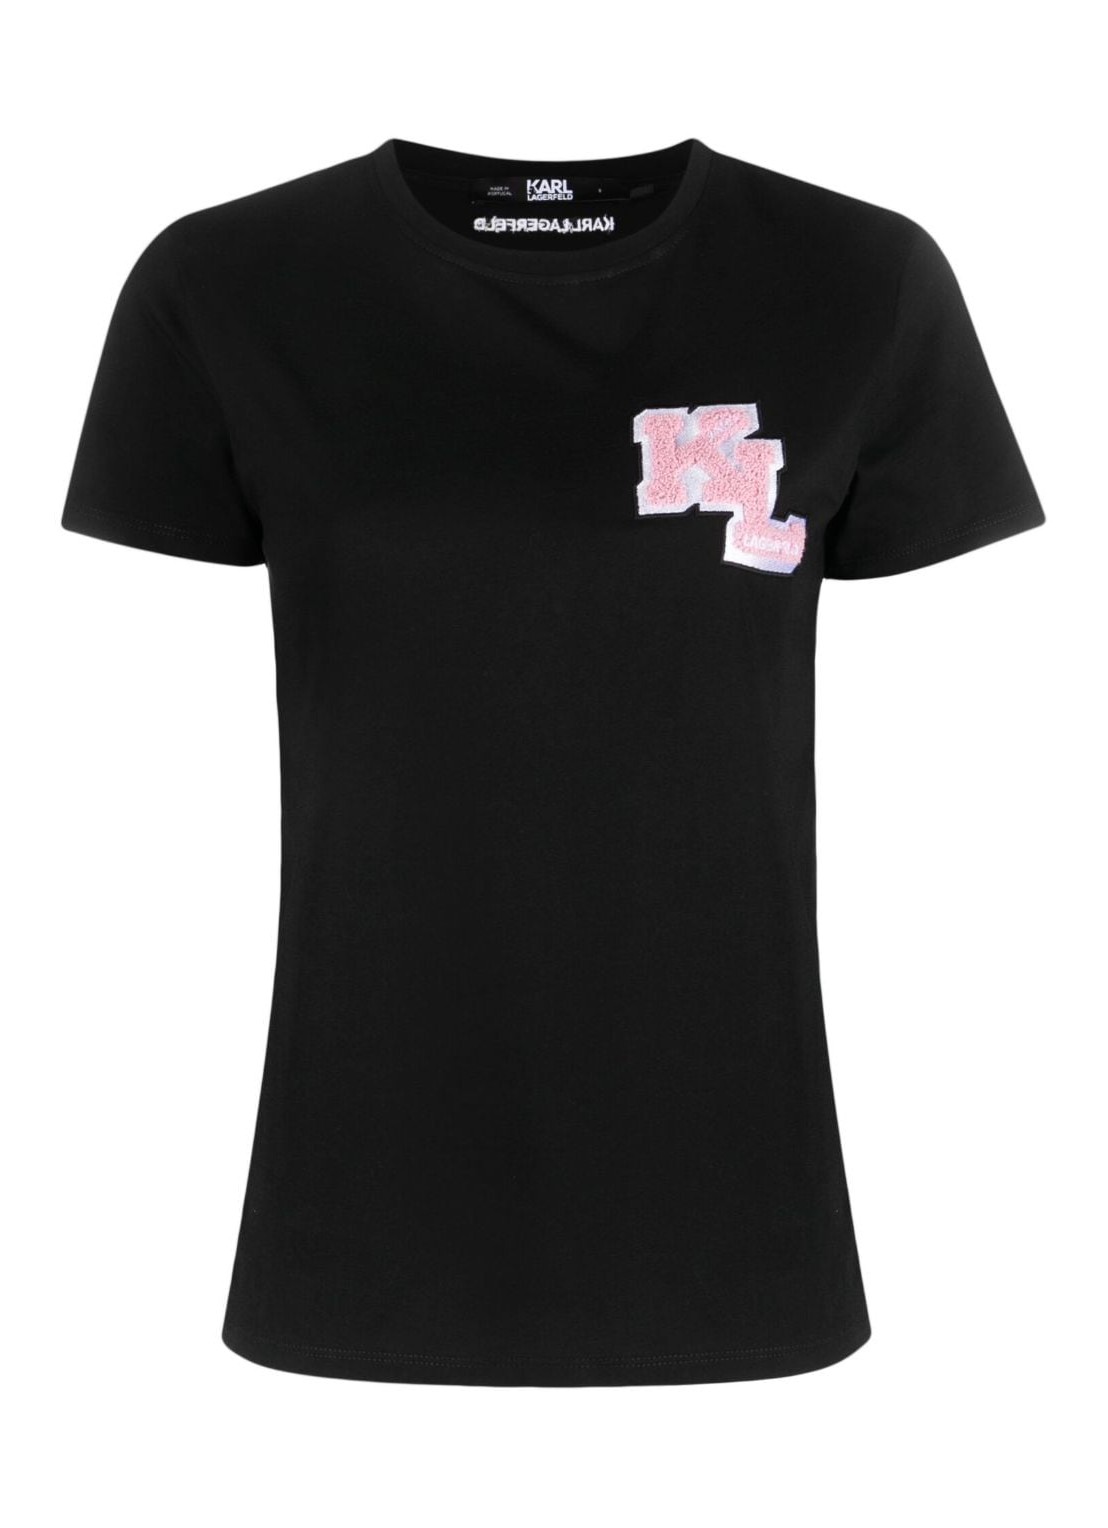 Top karl lagerfeld top woman kl logo t-shirt 240w1714 999 talla S
 